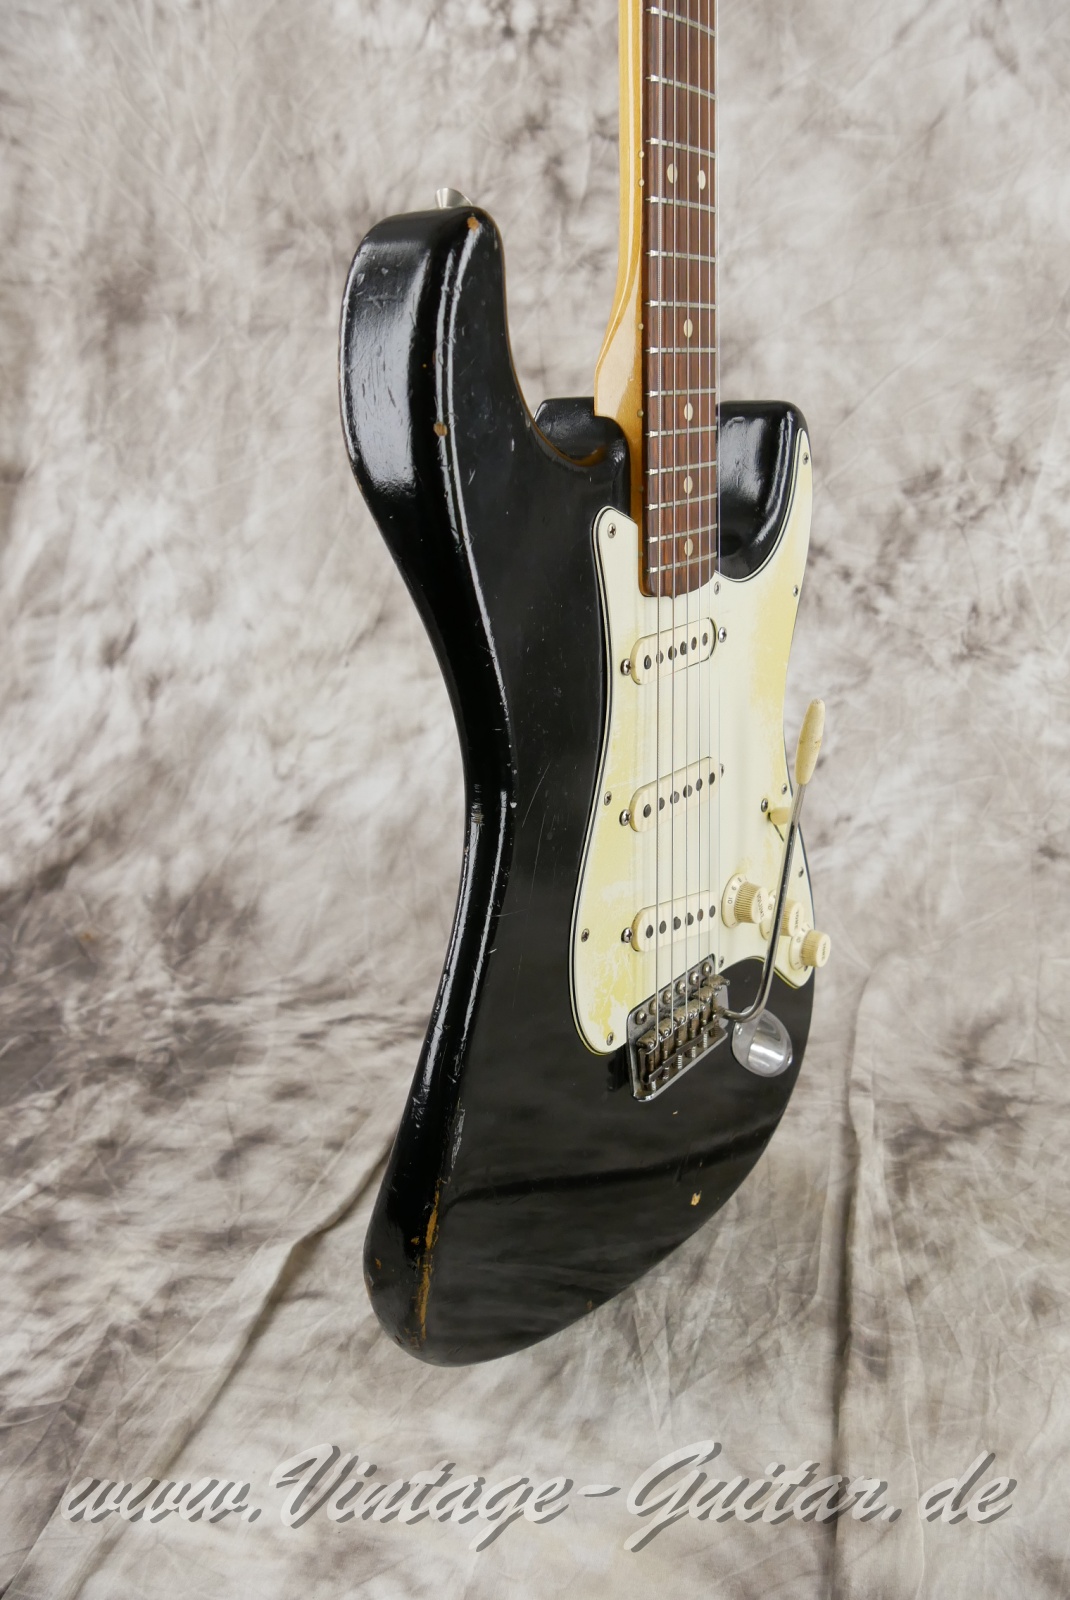 Fender-Stratocaster-1964-body-with-1969-neck-black-009.jpg